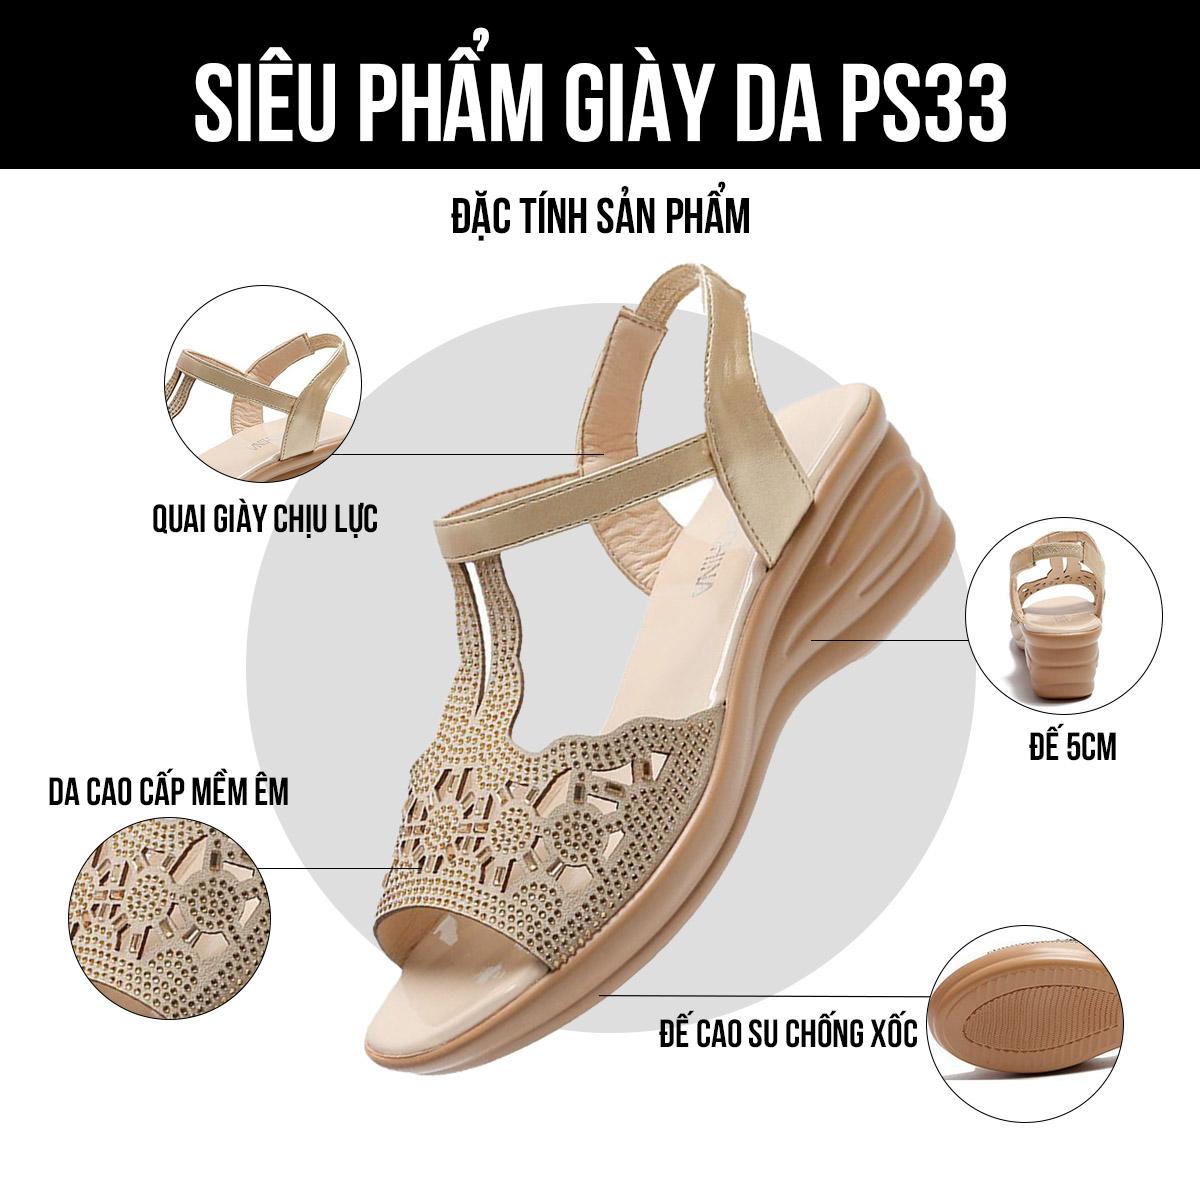 Giày sandal nữ PS33 đặc tính sản phẩm